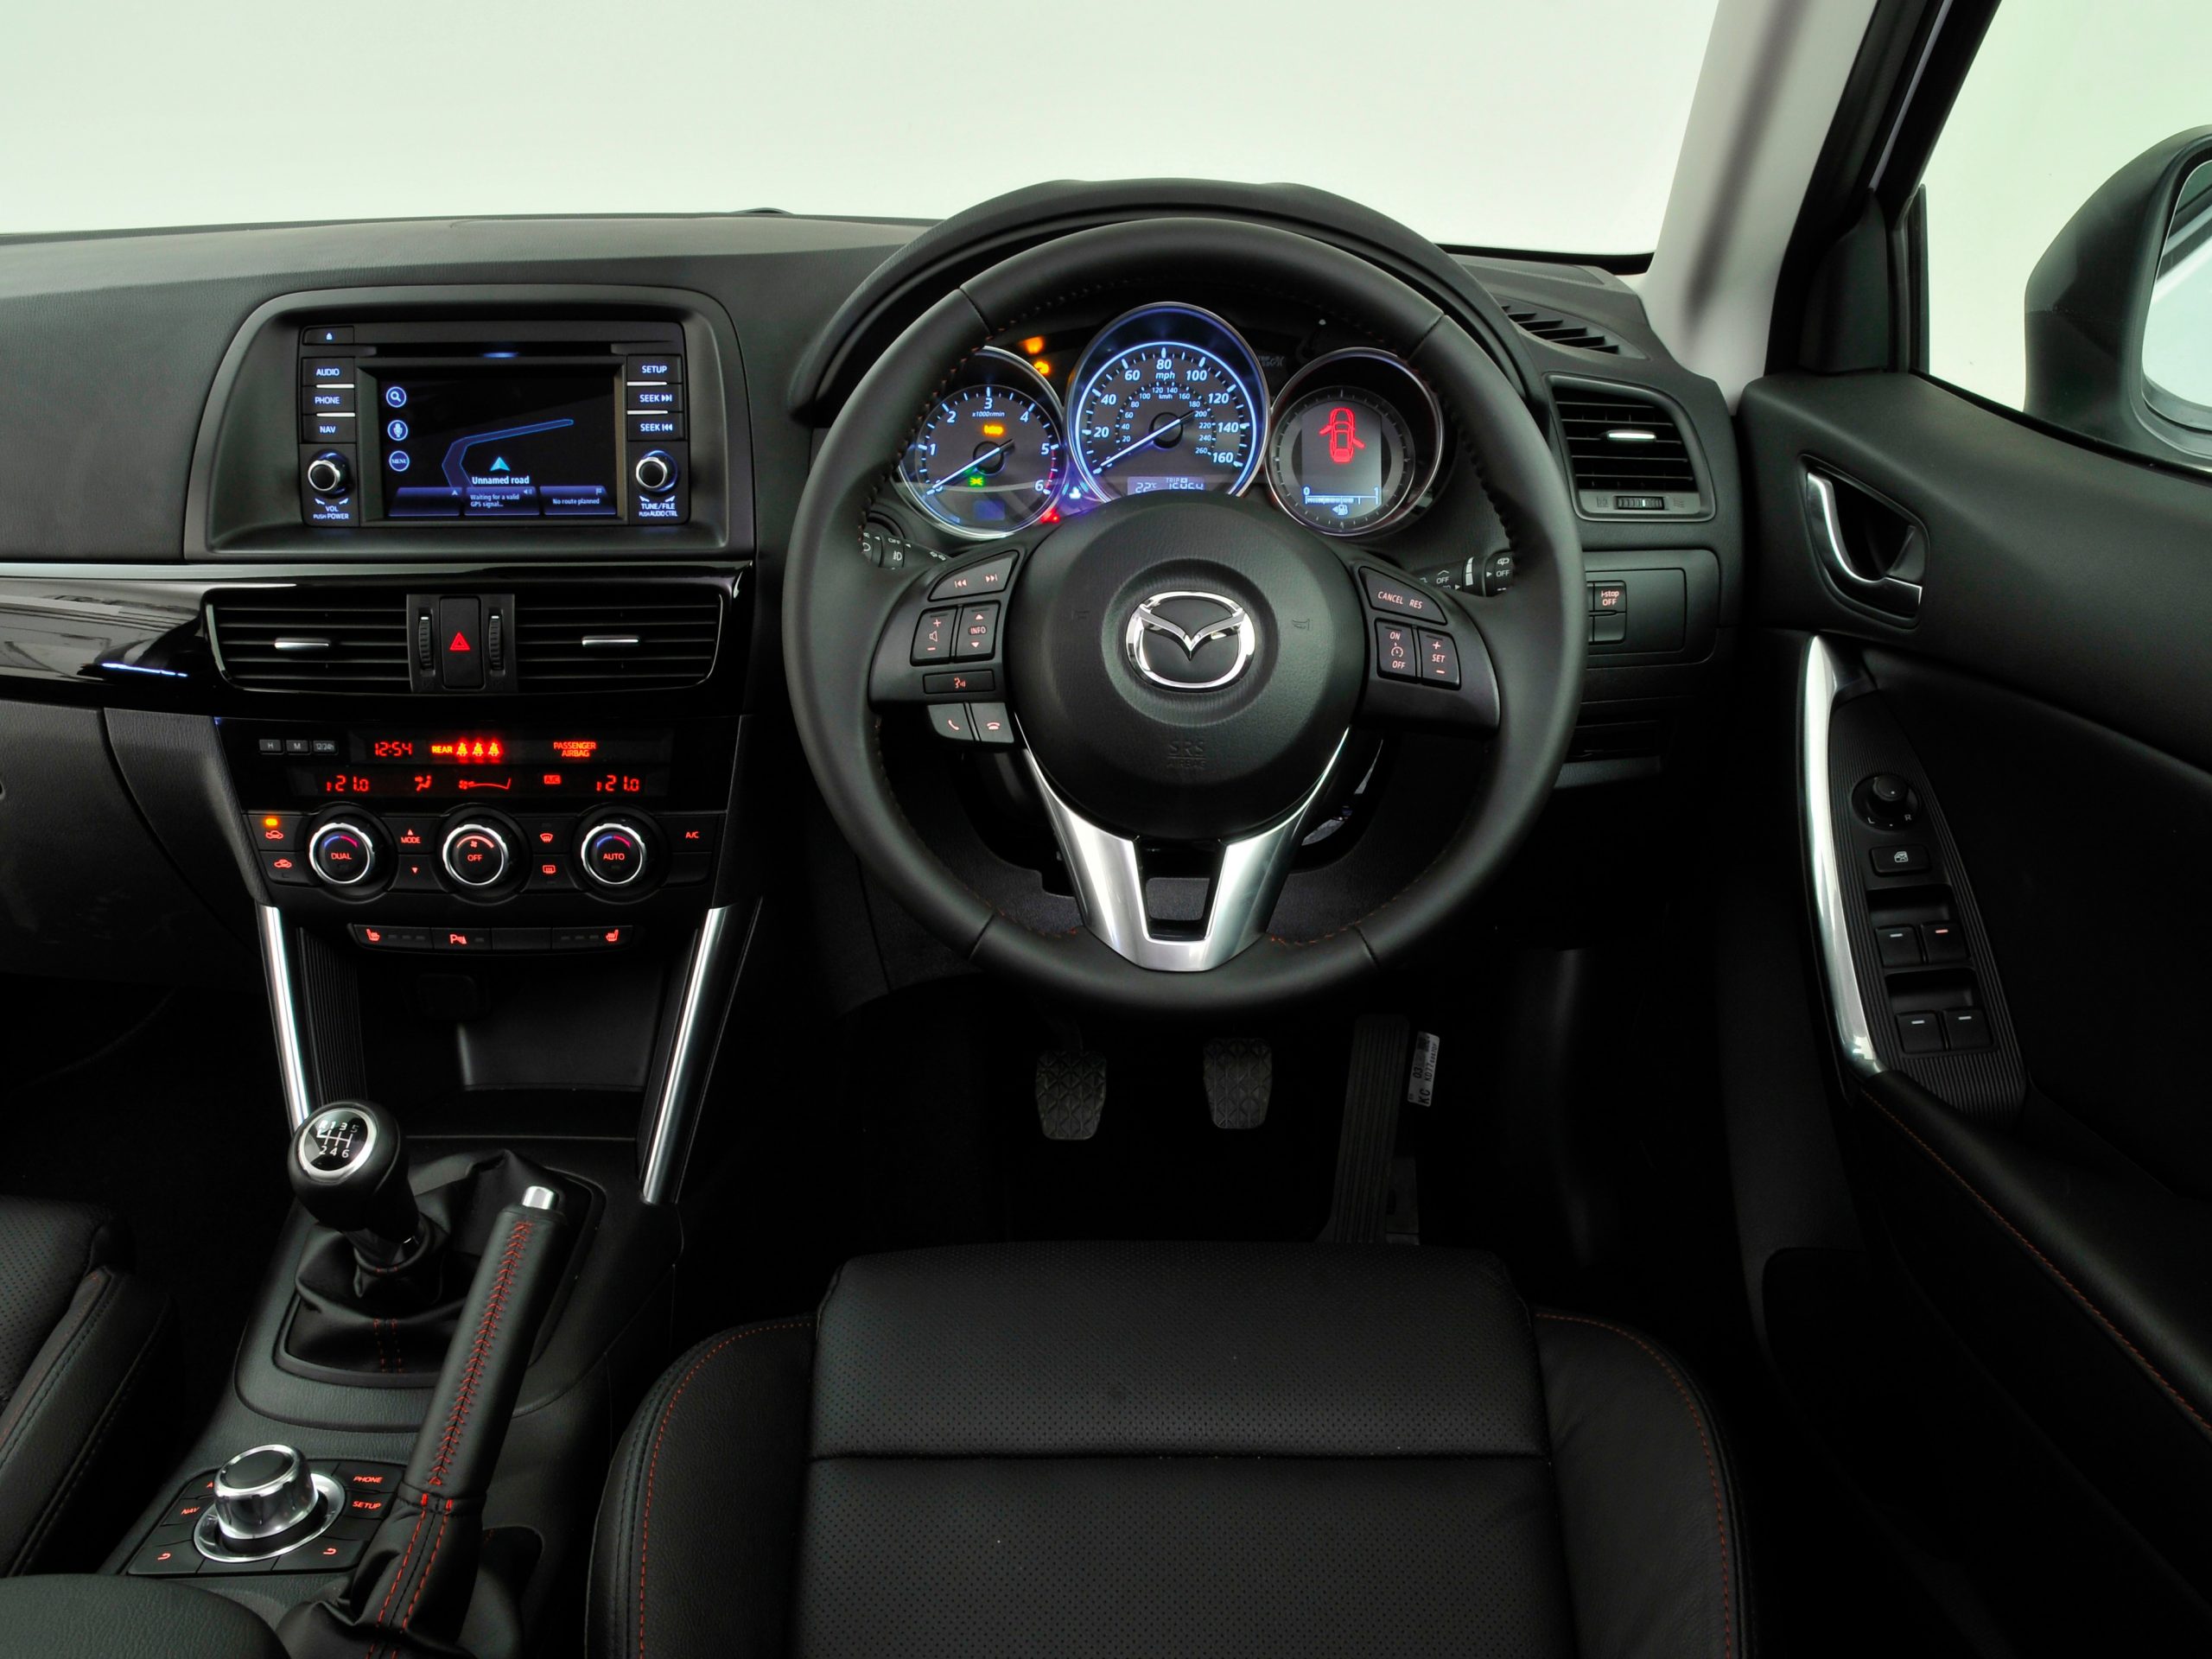 Mazda CX-5 Interior: The Definitive Guide